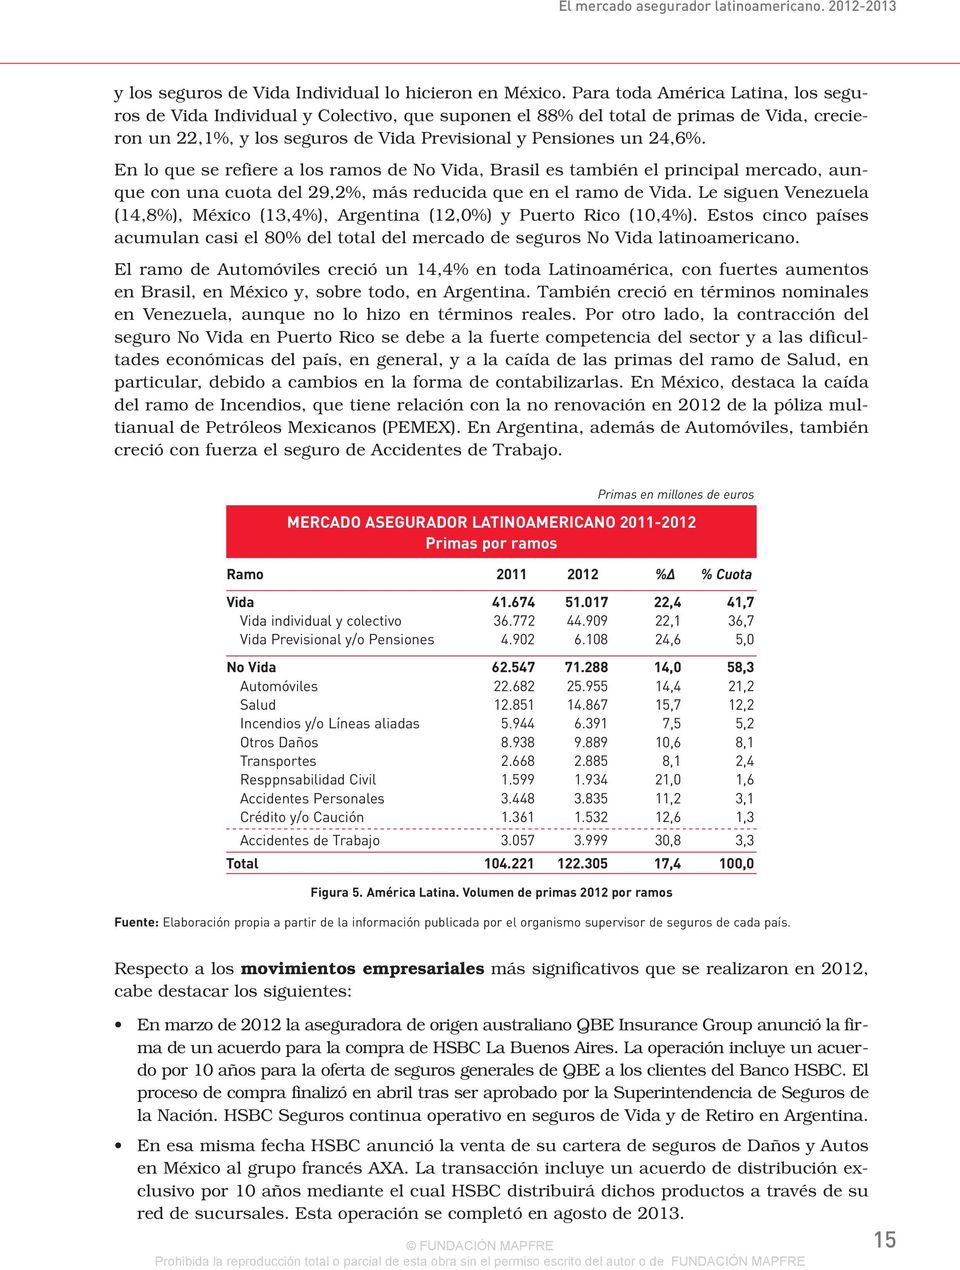 En lo que se refiere a los ramos de No Vida, Brasil es también el principal mercado, aunque con una cuota del 29,2%, más reducida que en el ramo de Vida.